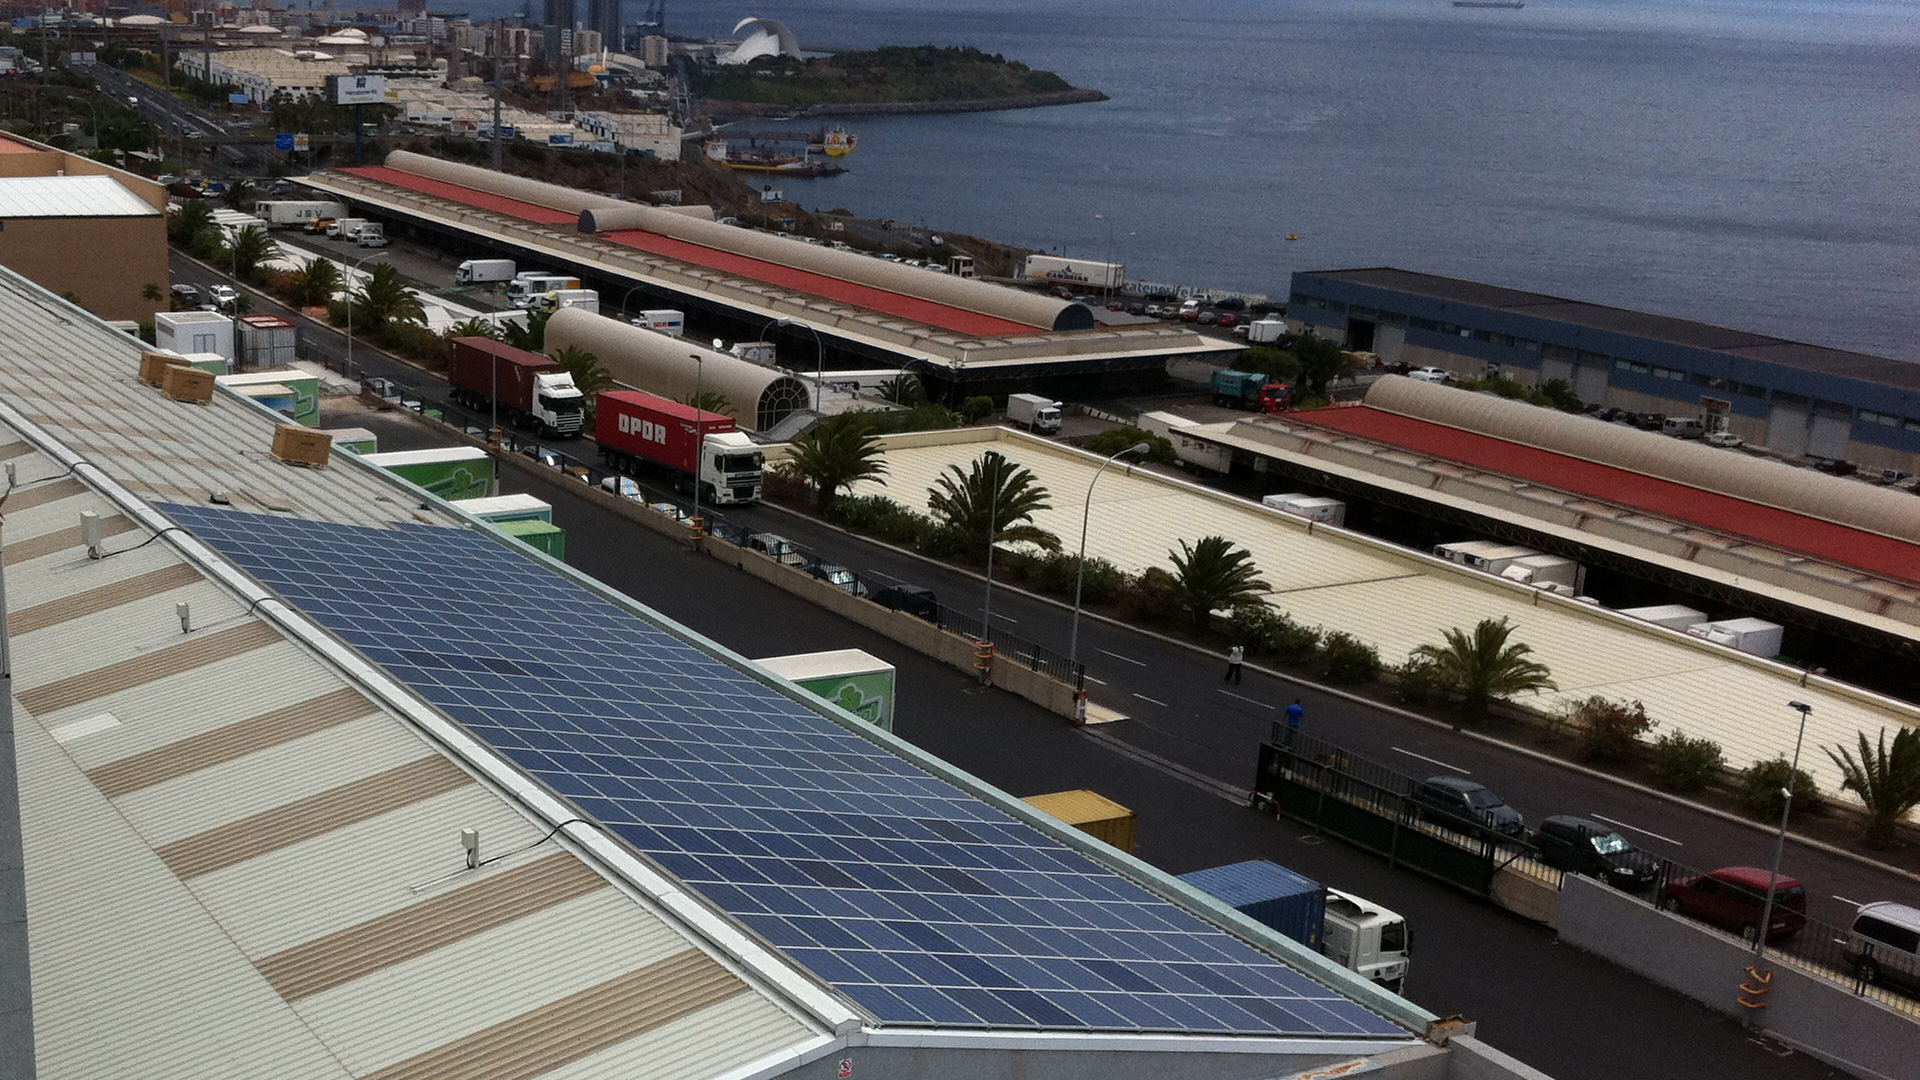 Instalación fotovoltaica para autoconsumo industrial montada sobre cubierta a dos aguas